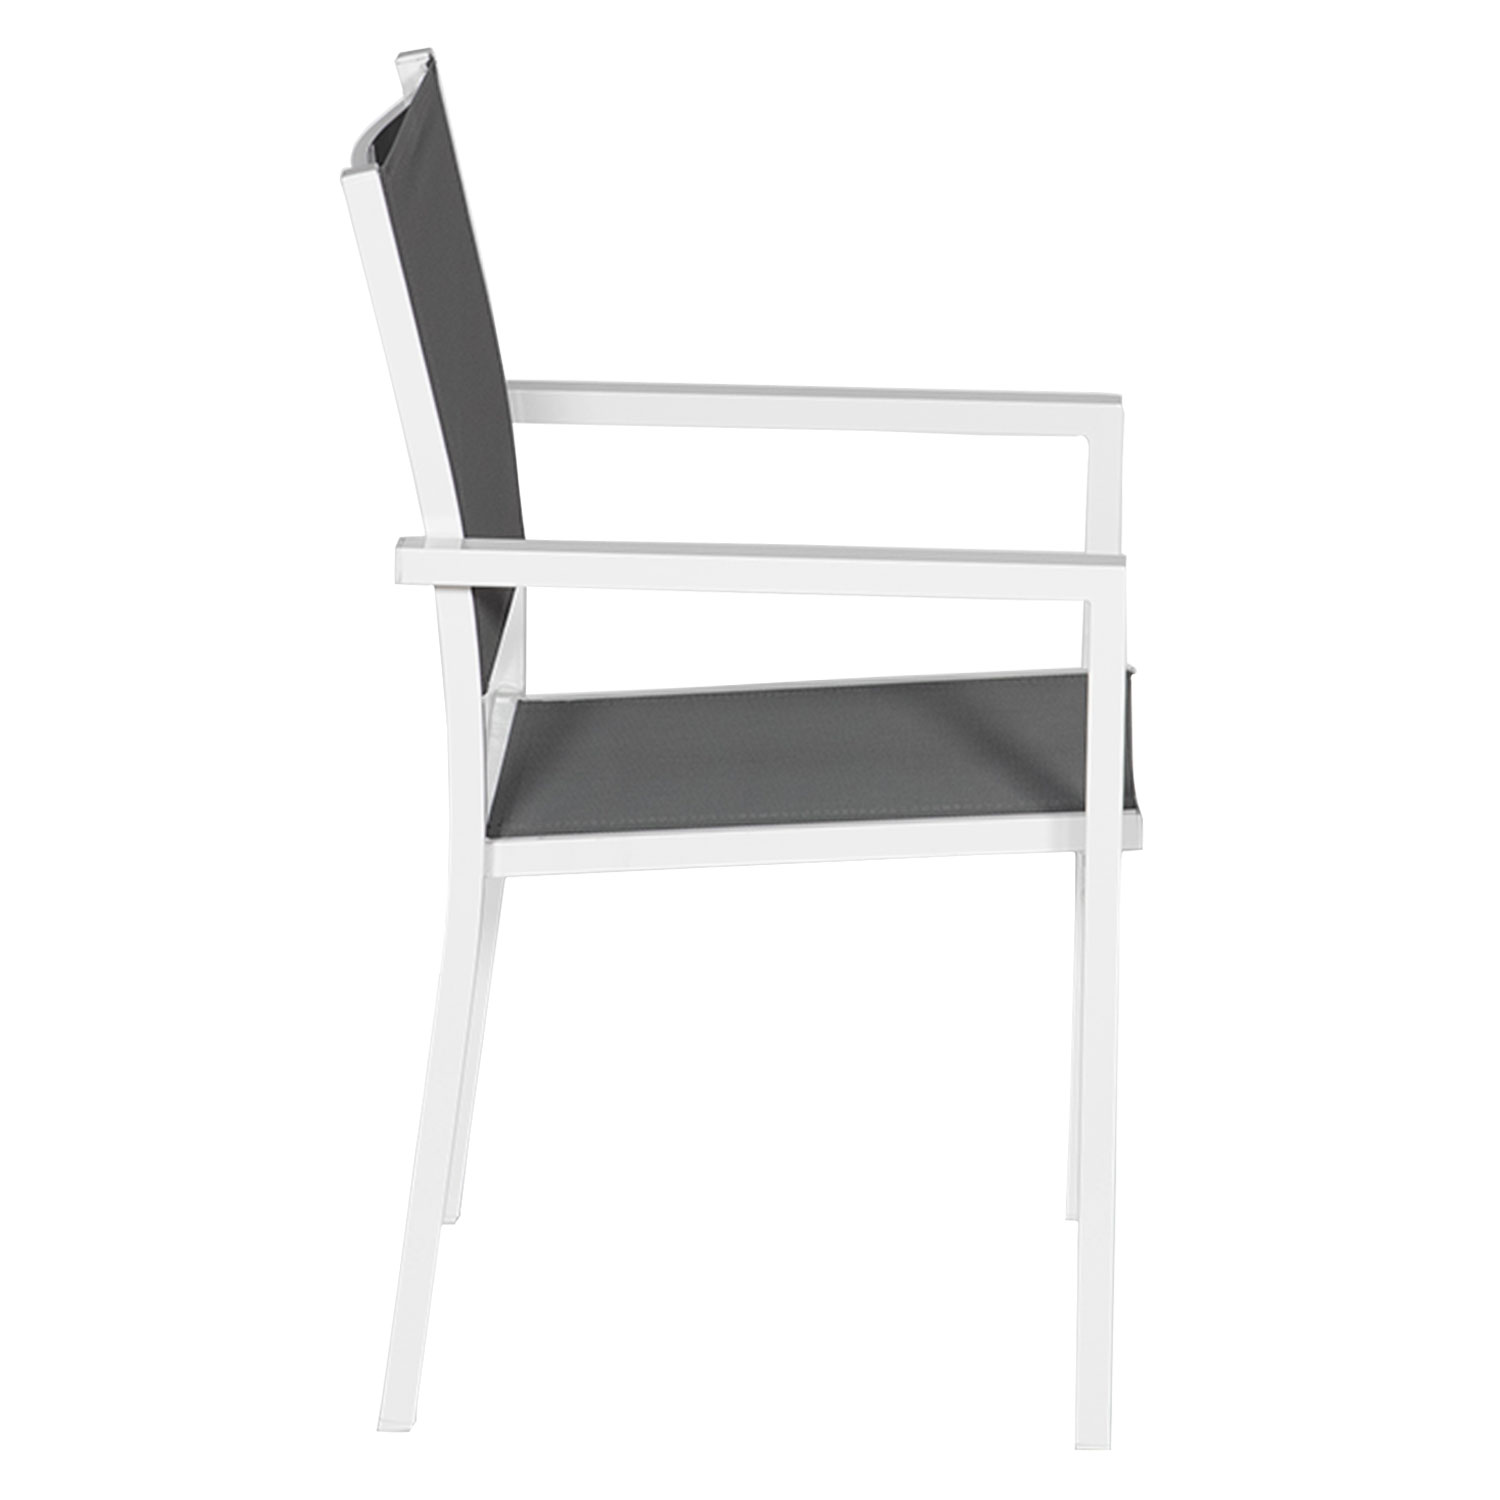 Satz von 4 Stühlen aus weißem Aluminium - graues Textilene